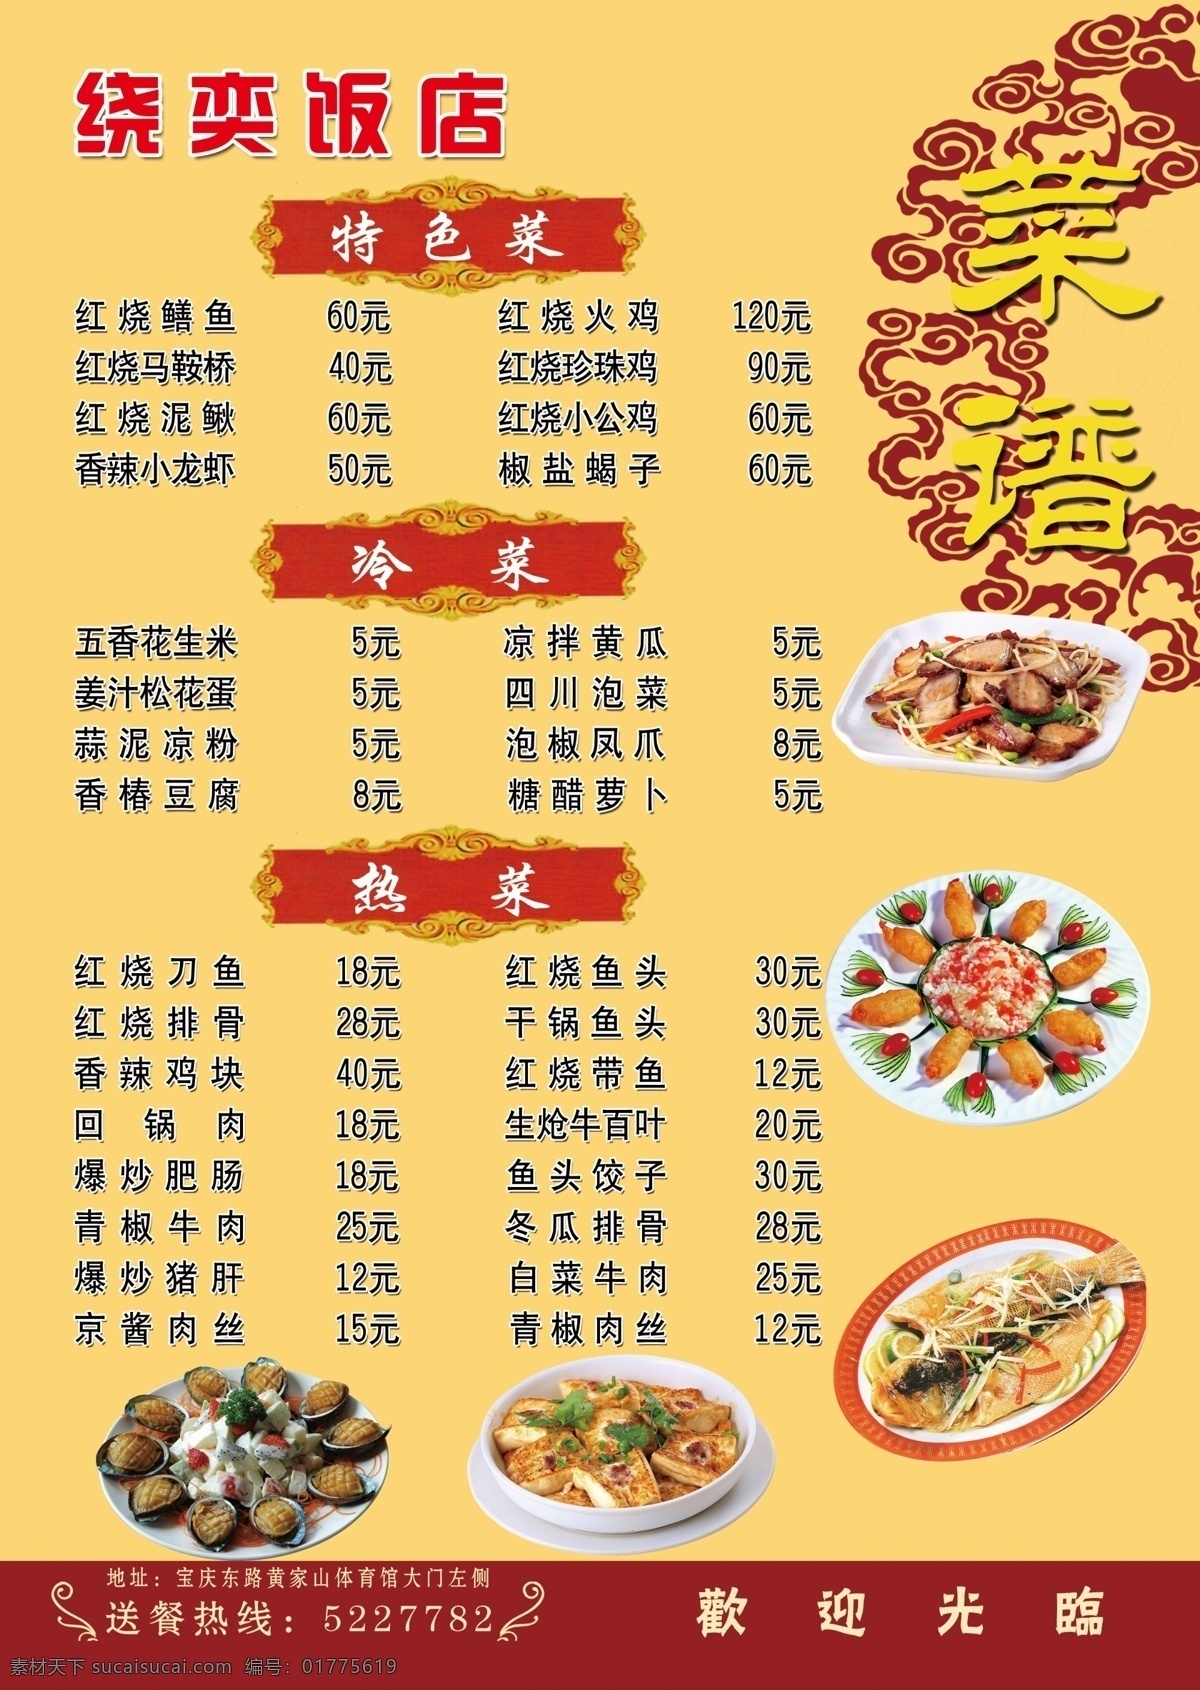 饭店 菜谱 鲍鱼 菜单 炒菜 美食 鱼 炸食 画册 封面